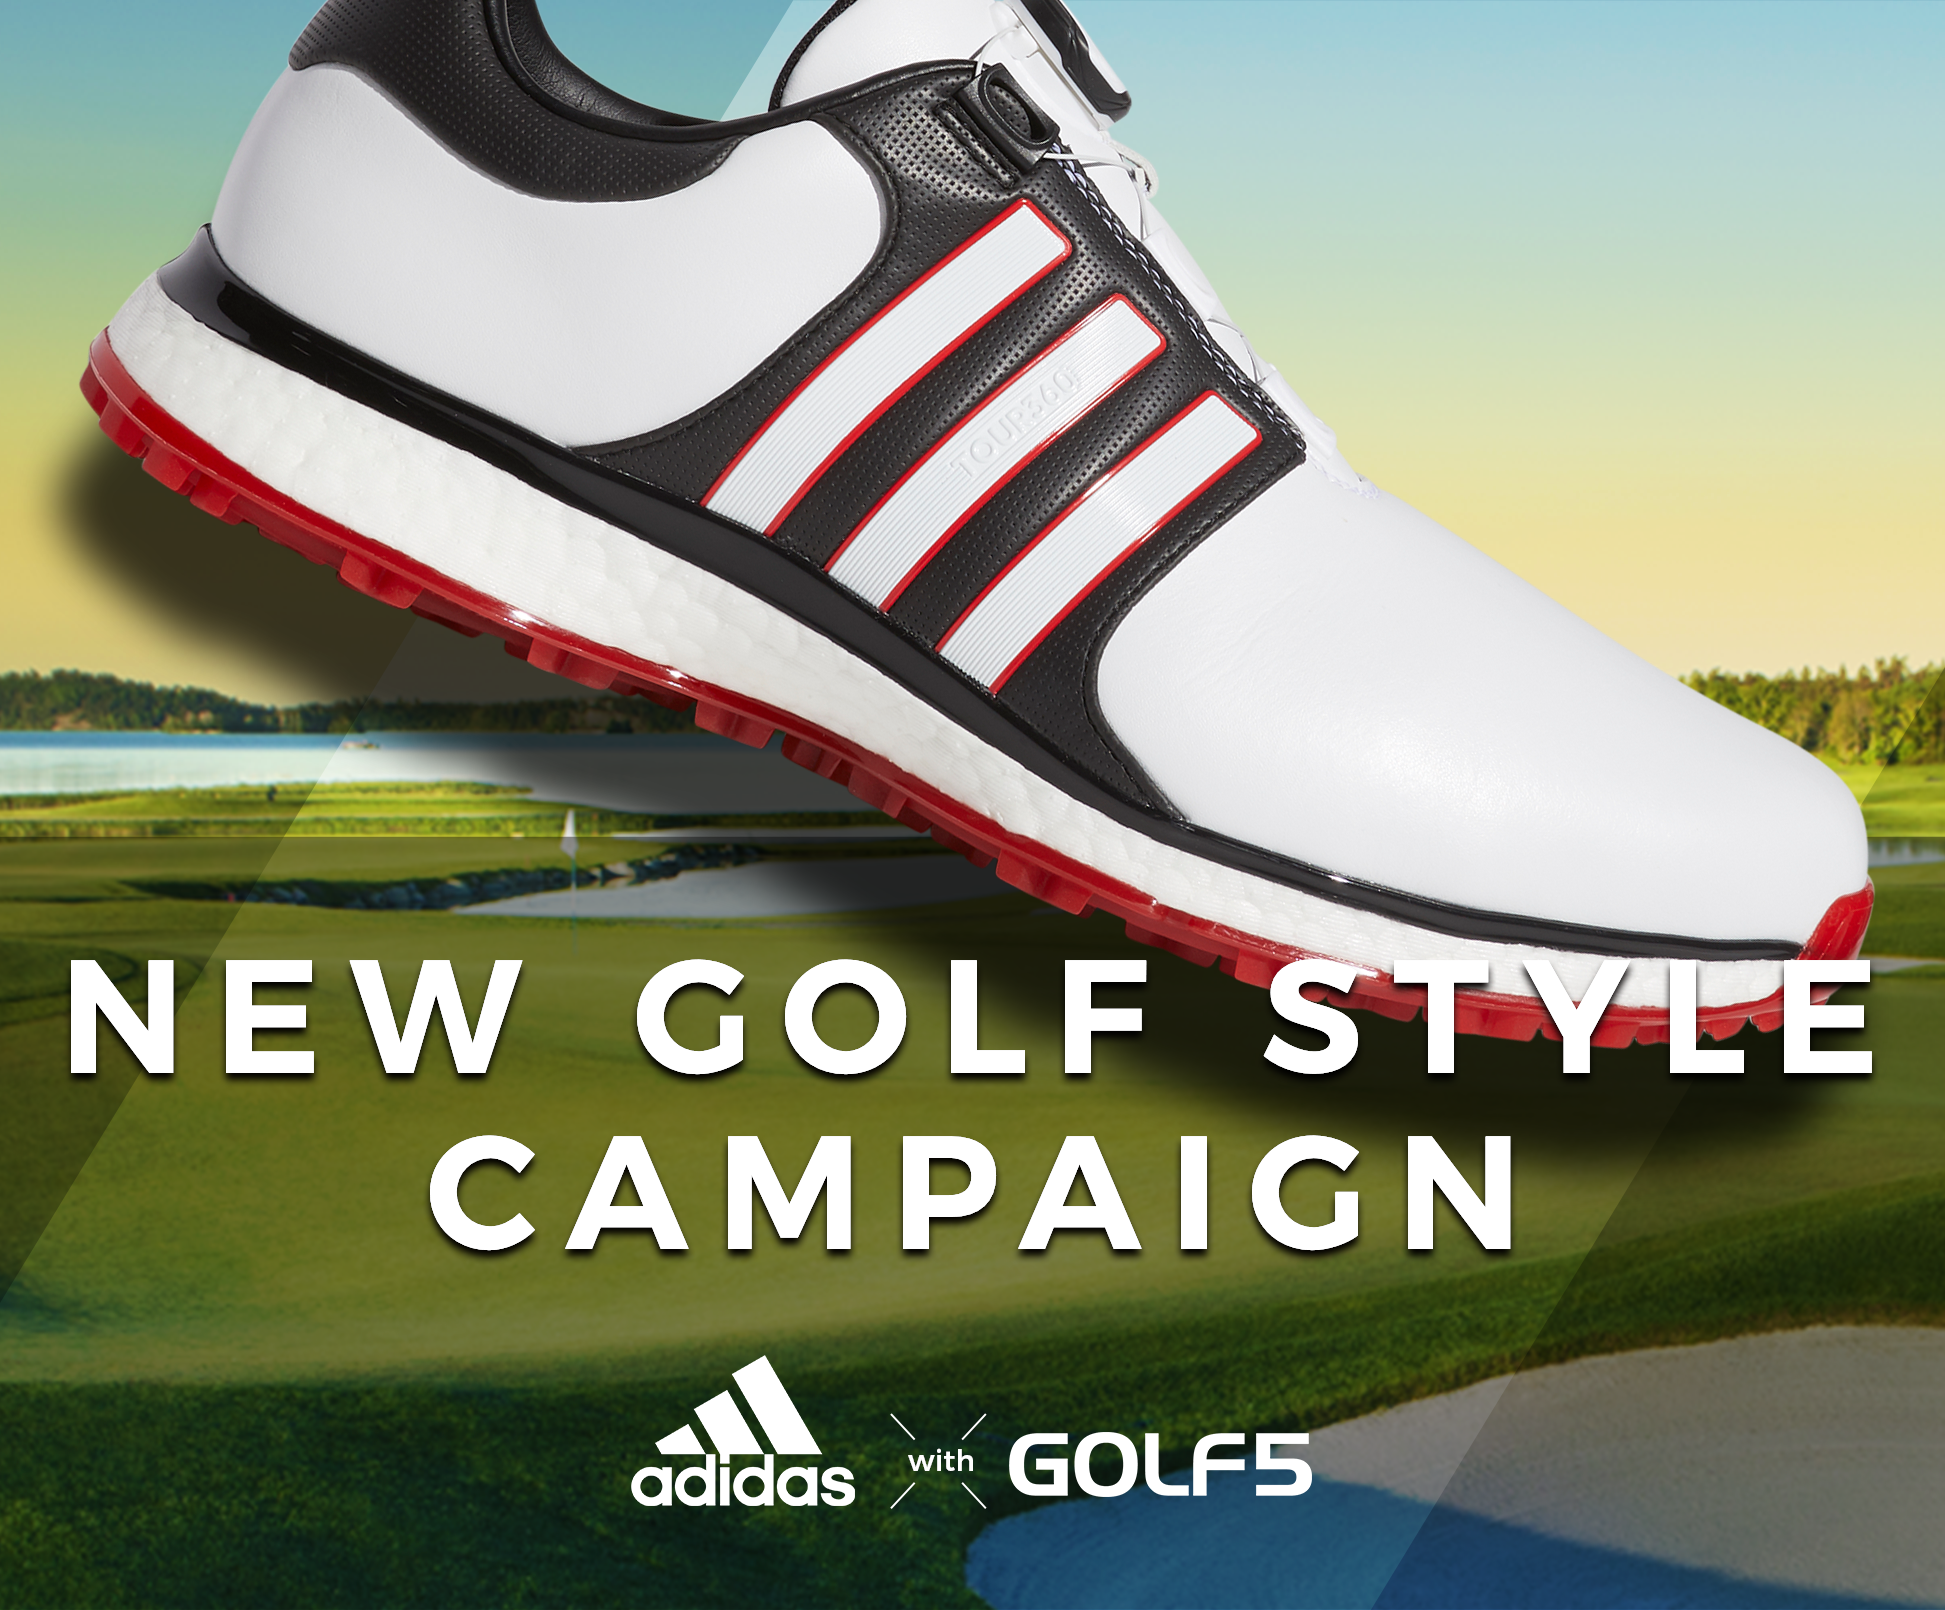 アディダス with ゴルフ5 new golf style campaign